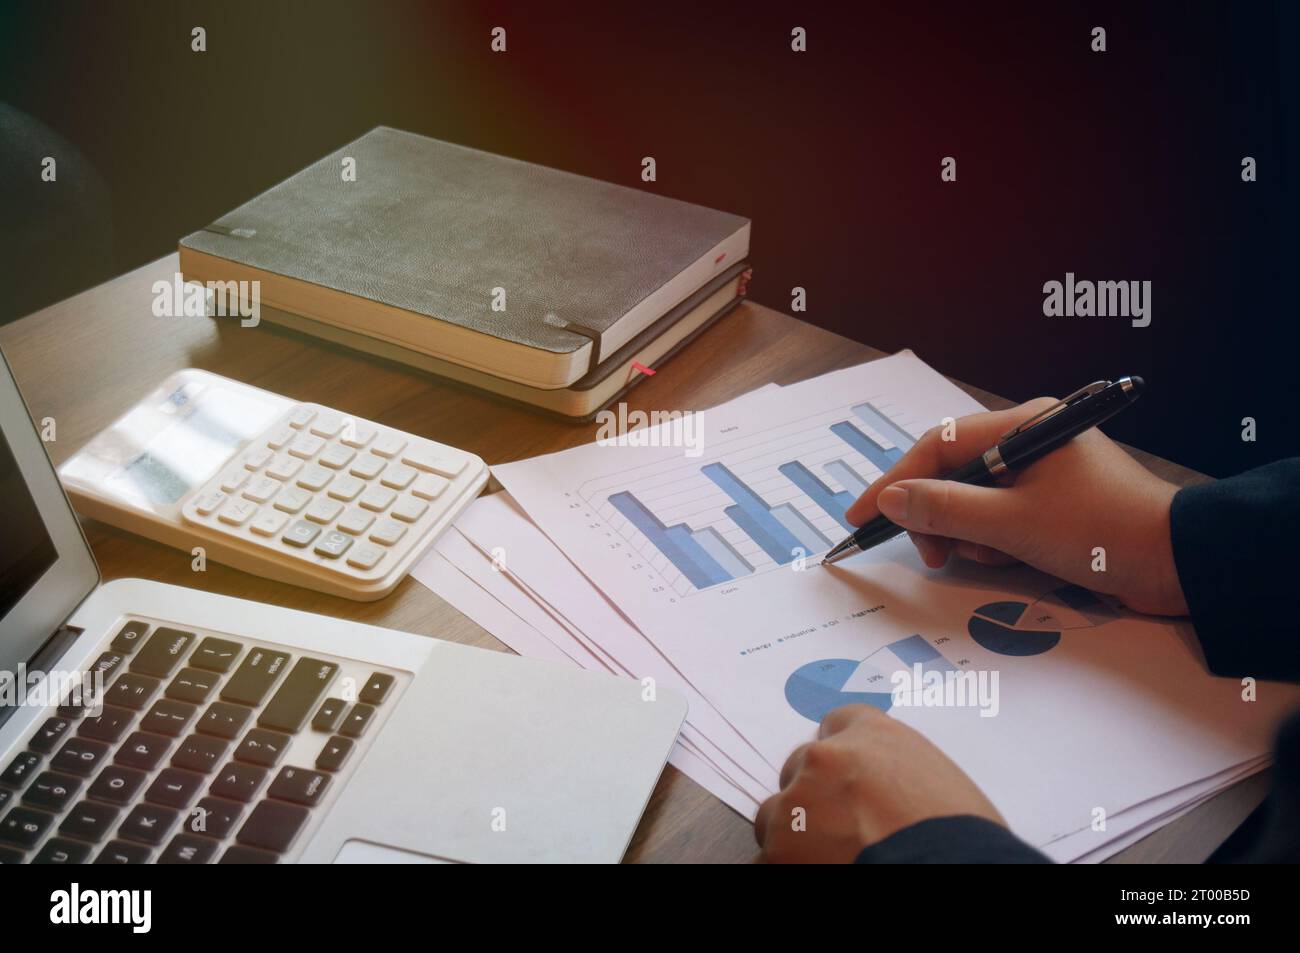 Les femmes de comptabilité d'entreprise travaillent avec la calculatrice et l'ordinateur portable. Concept de technologie financière Banque D'Images